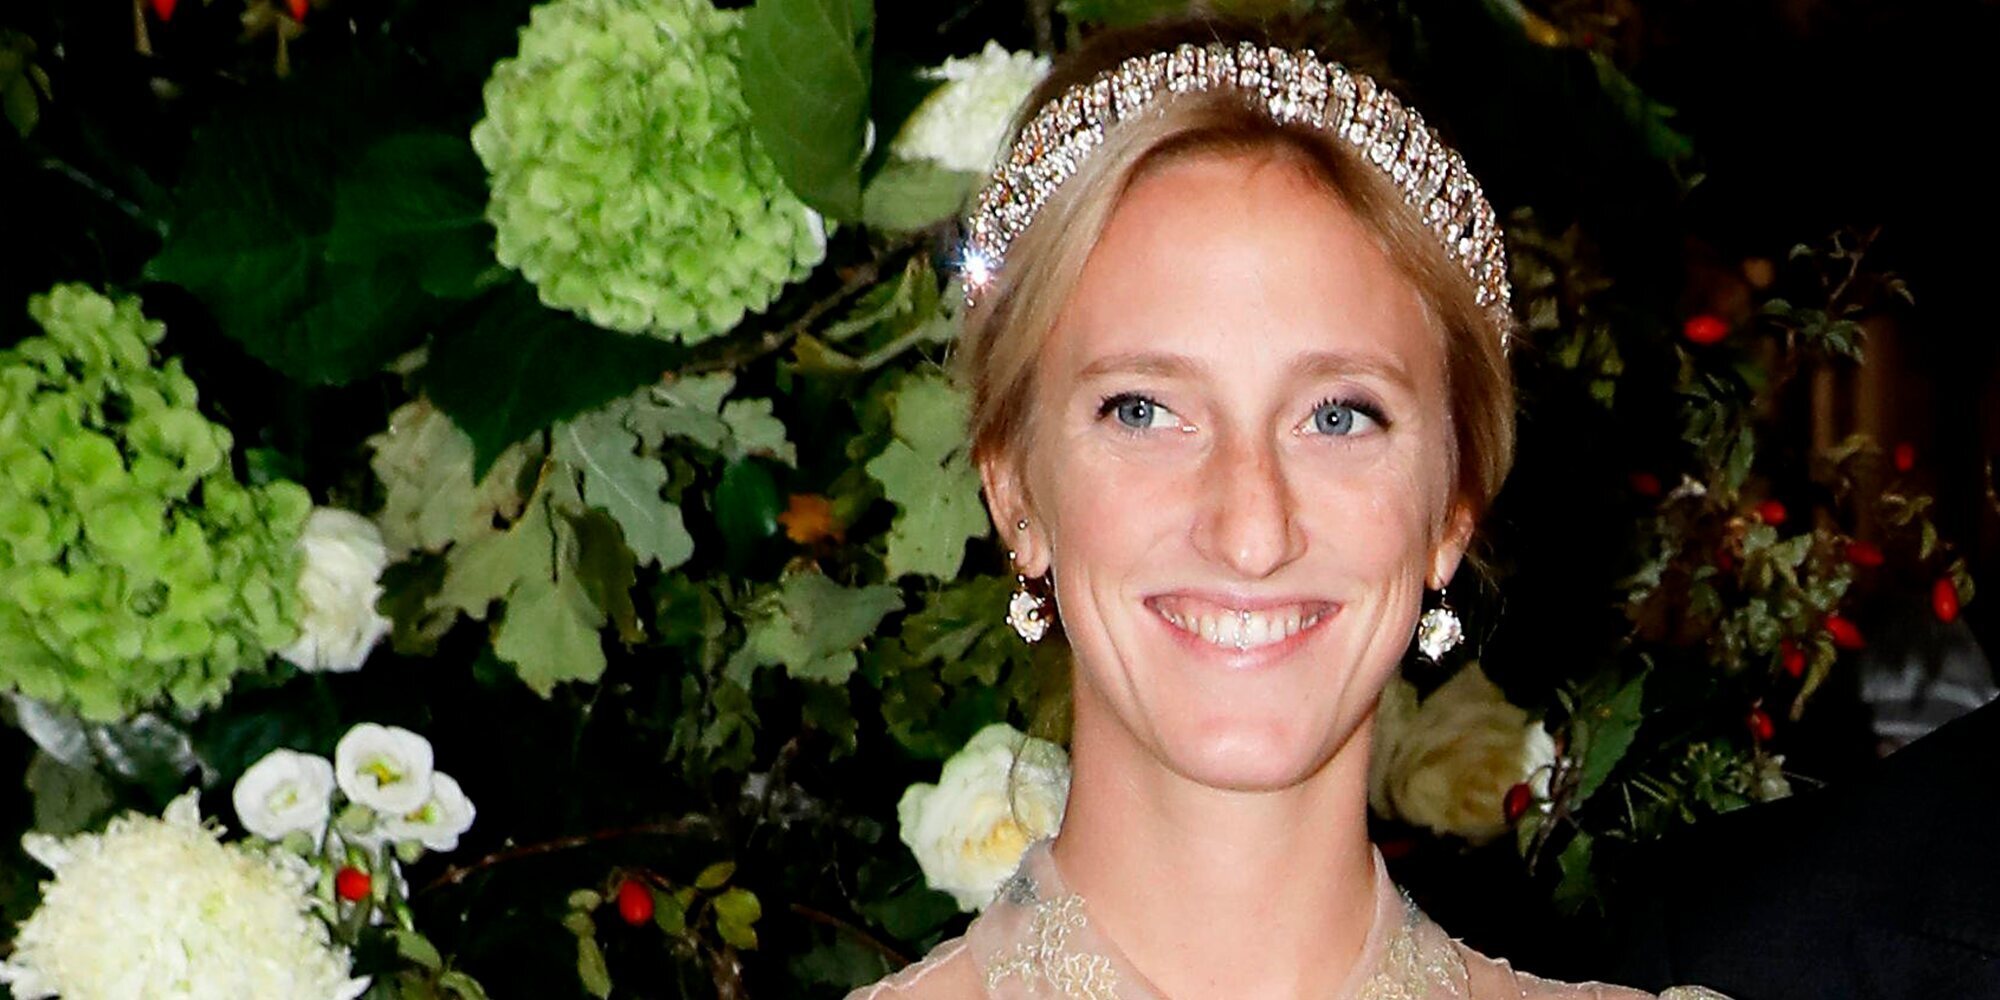 La Casa Real de Bélgica anuncia el compromiso de la Princesa María Laura siendo la primera boda real de 2022